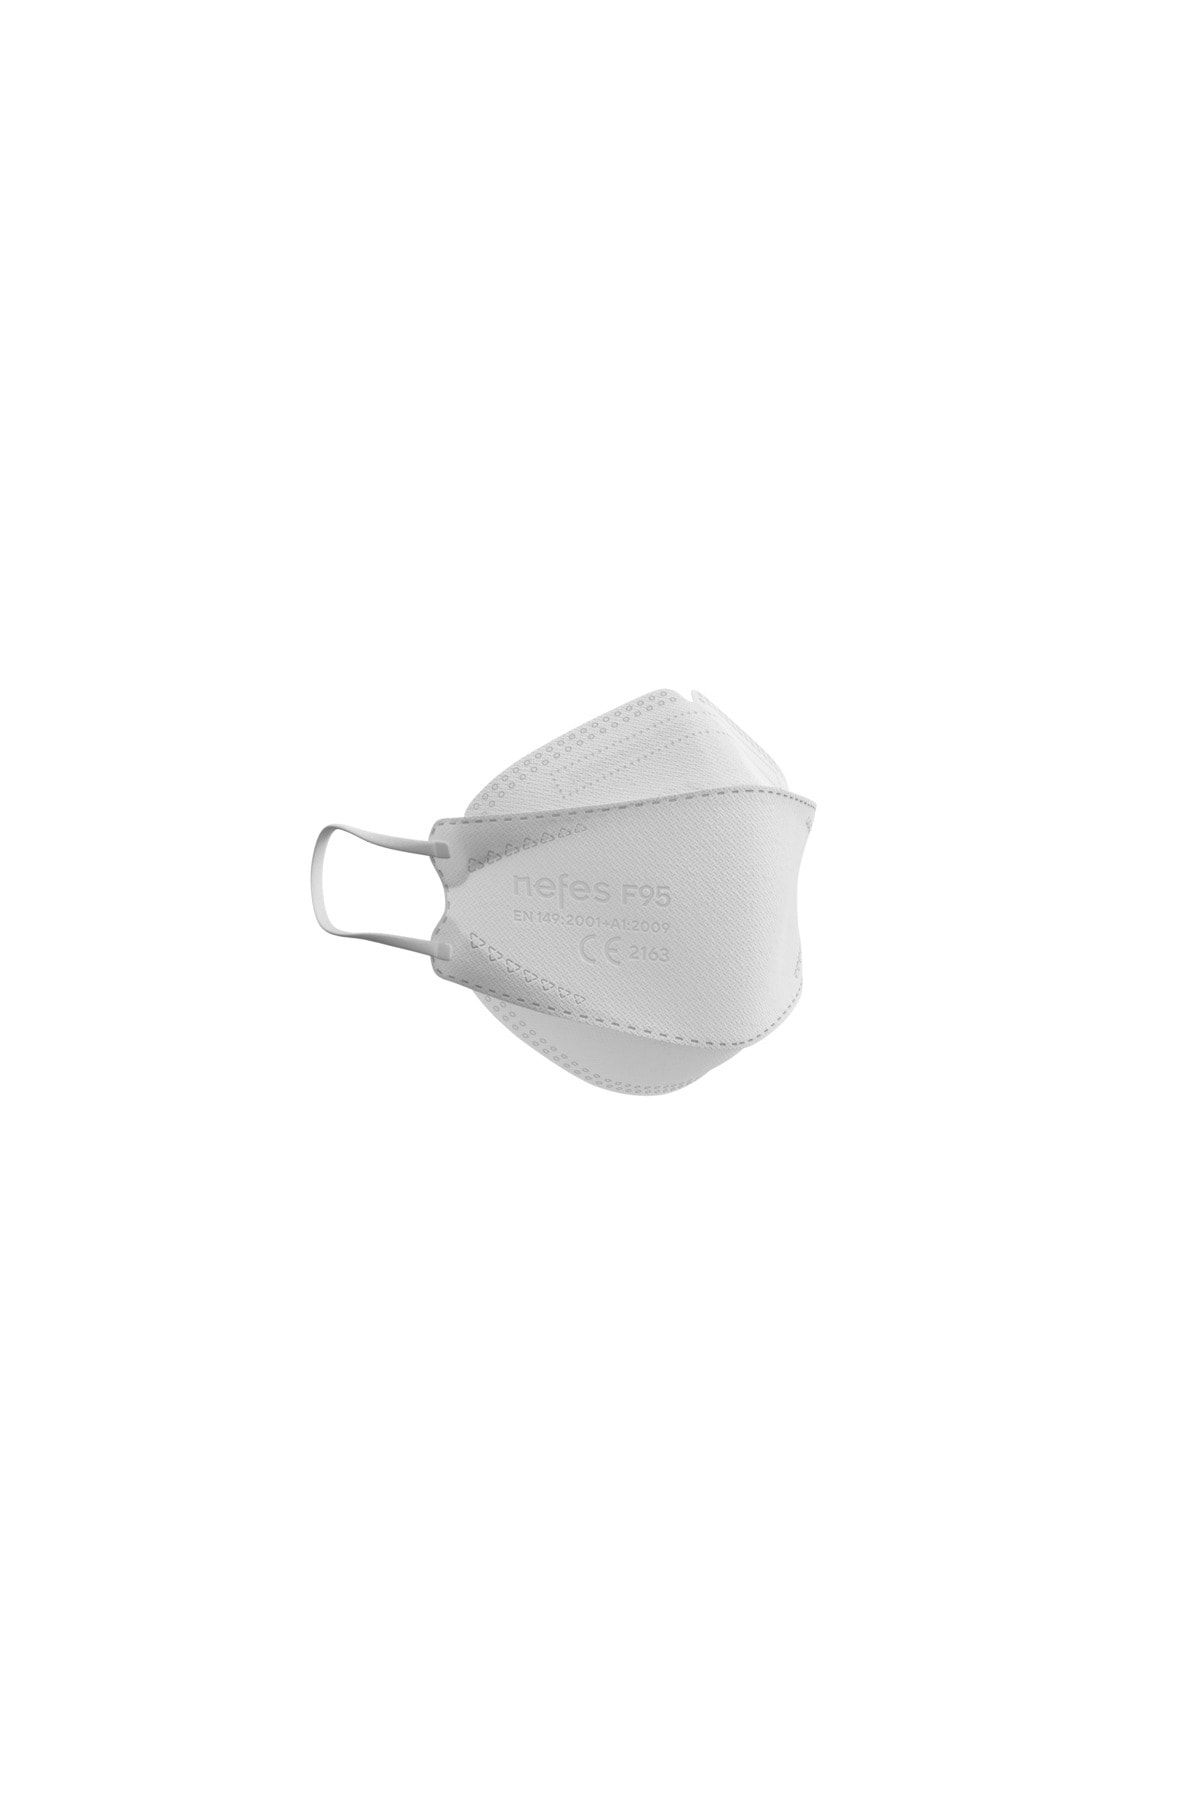 nefes maske N'fes F95 Beyaz Renk Kore Tipi N95 Maske(KF 94) 20 Kutu 200 Adet Iso Ve Ce Belgeli